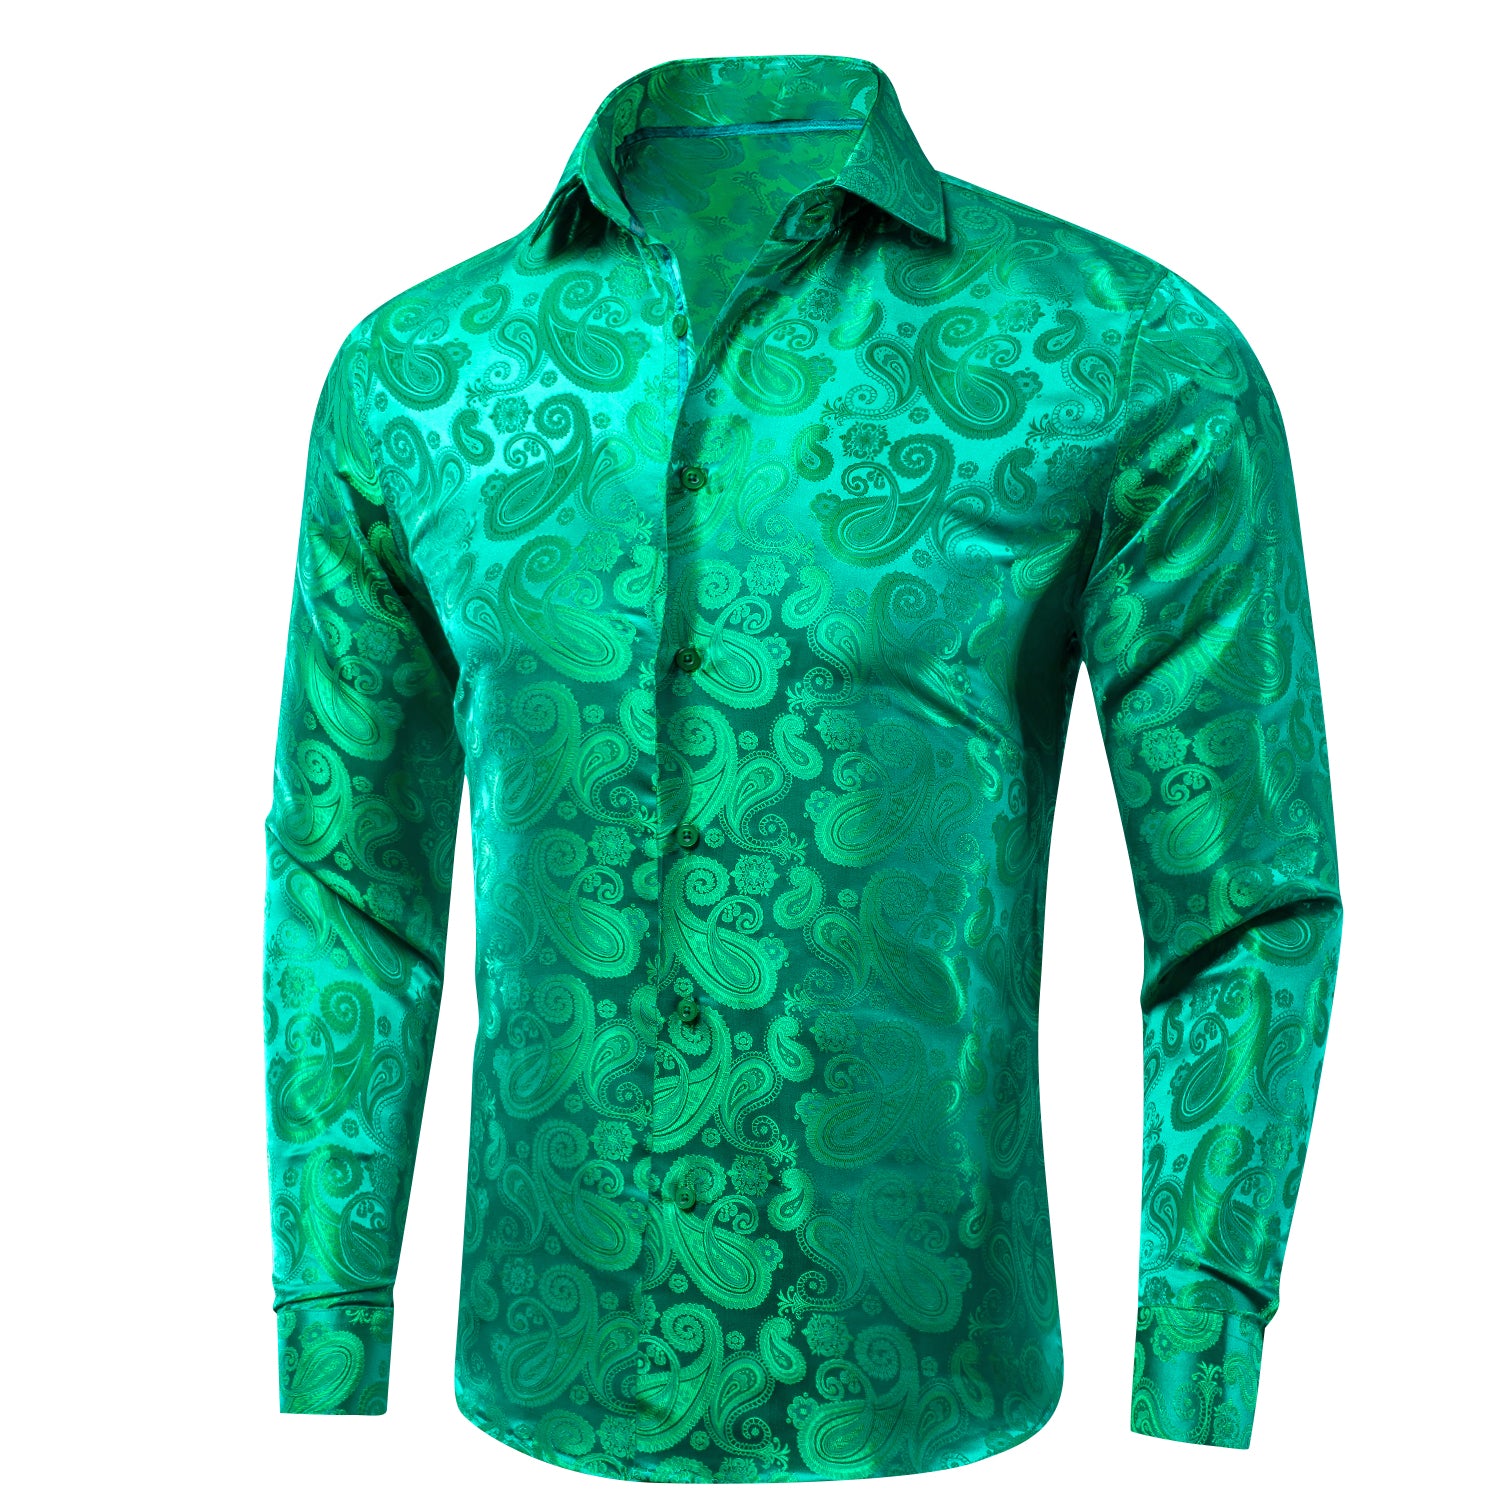 Grass Green Paisley Silk Men's Long Sleeve Shirt Casual